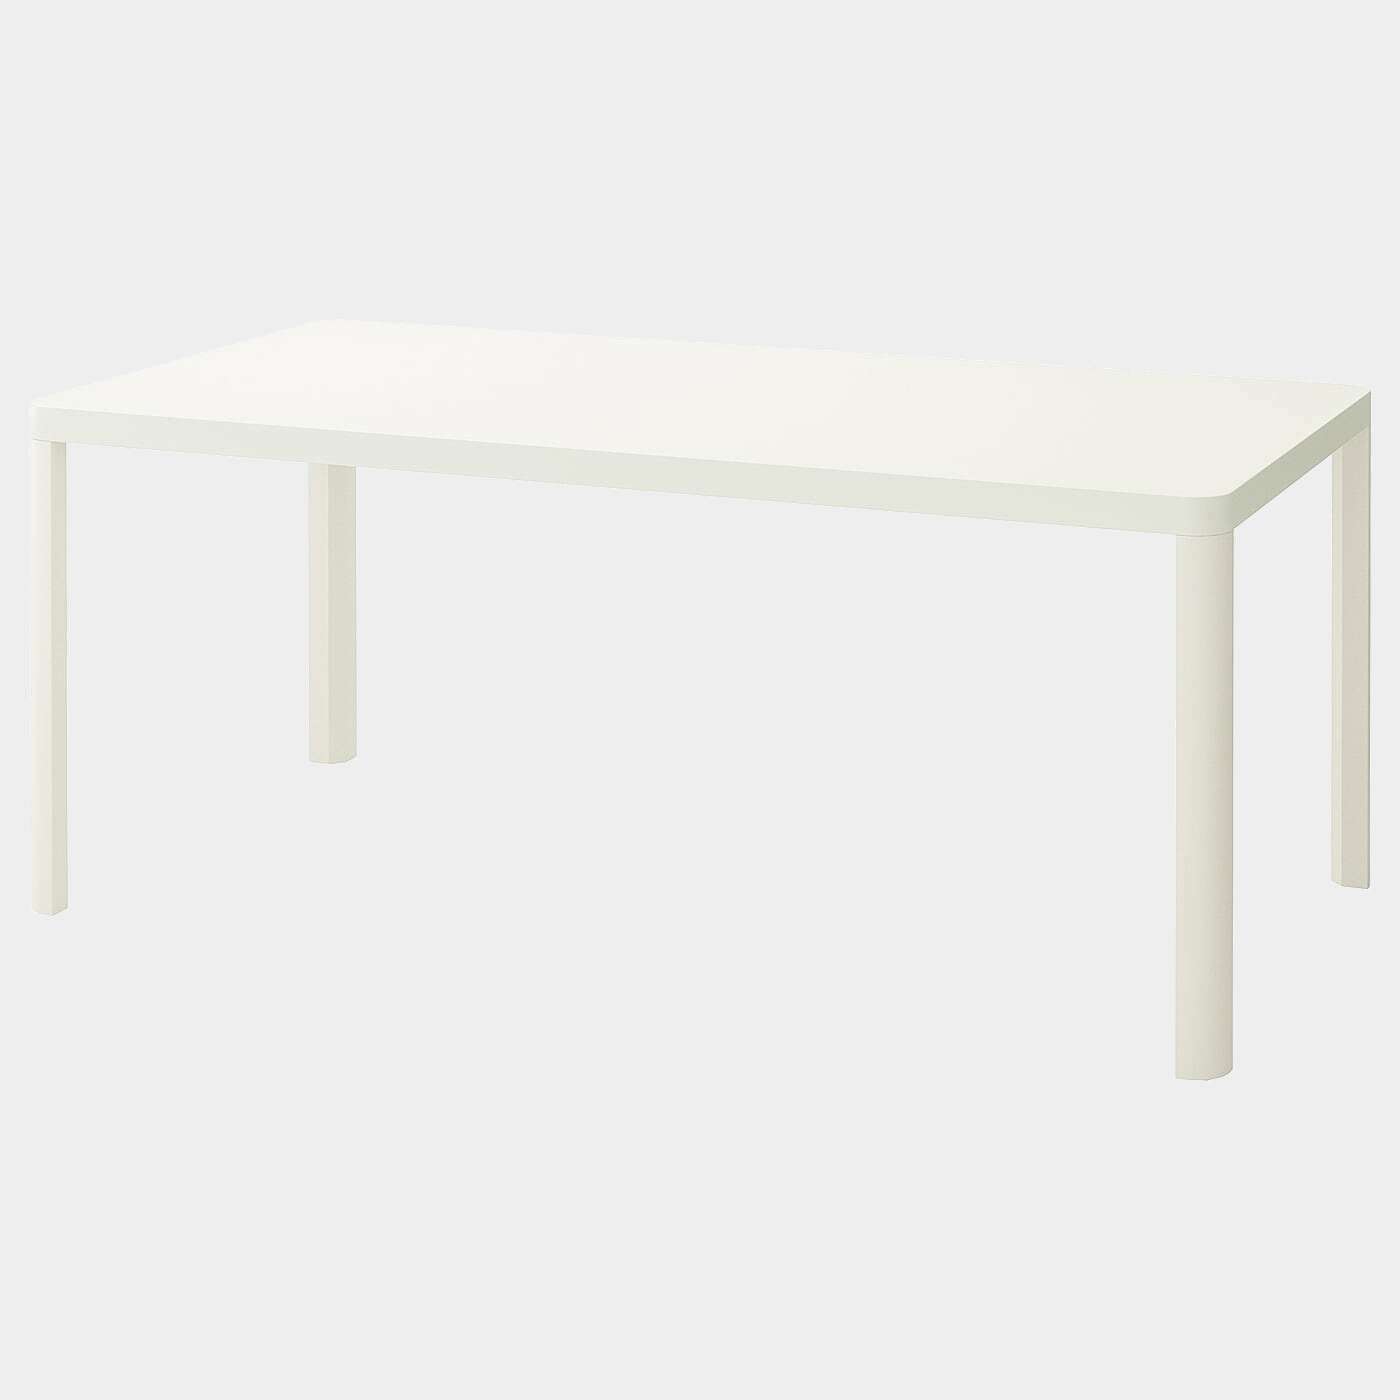 TINGBY Tisch  - Esstische - Möbel Ideen für dein Zuhause von Home Trends. Möbel Trends von Social Media Influencer für dein Skandi Zuhause.